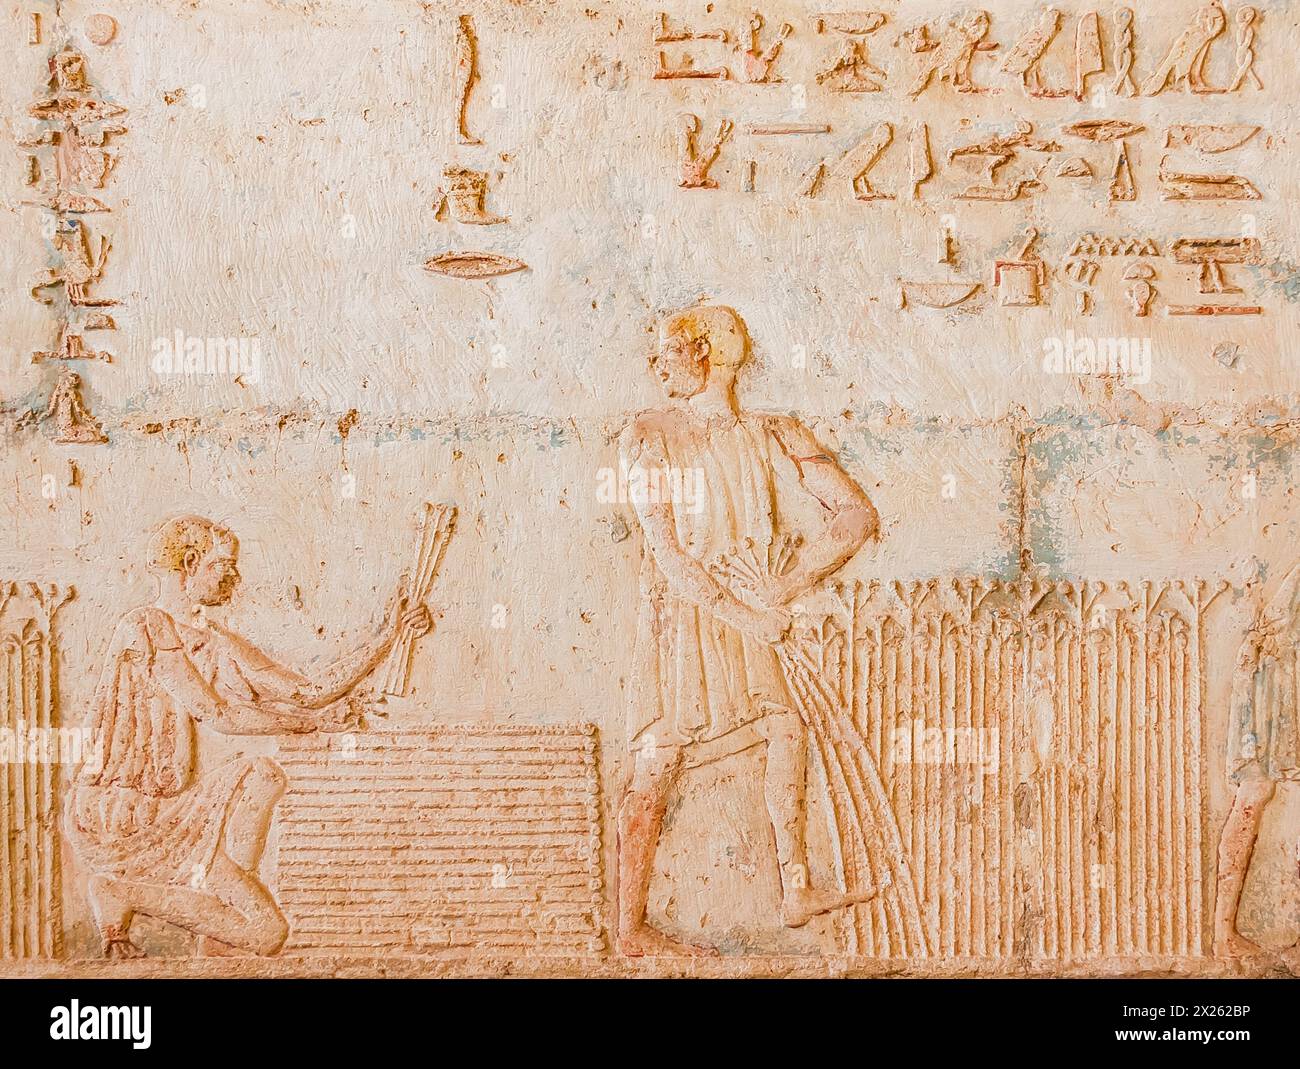 Egitto, tonno el Gebel, tomba di Petosiris, raccolta del lino, impacchettamento. Foto Stock